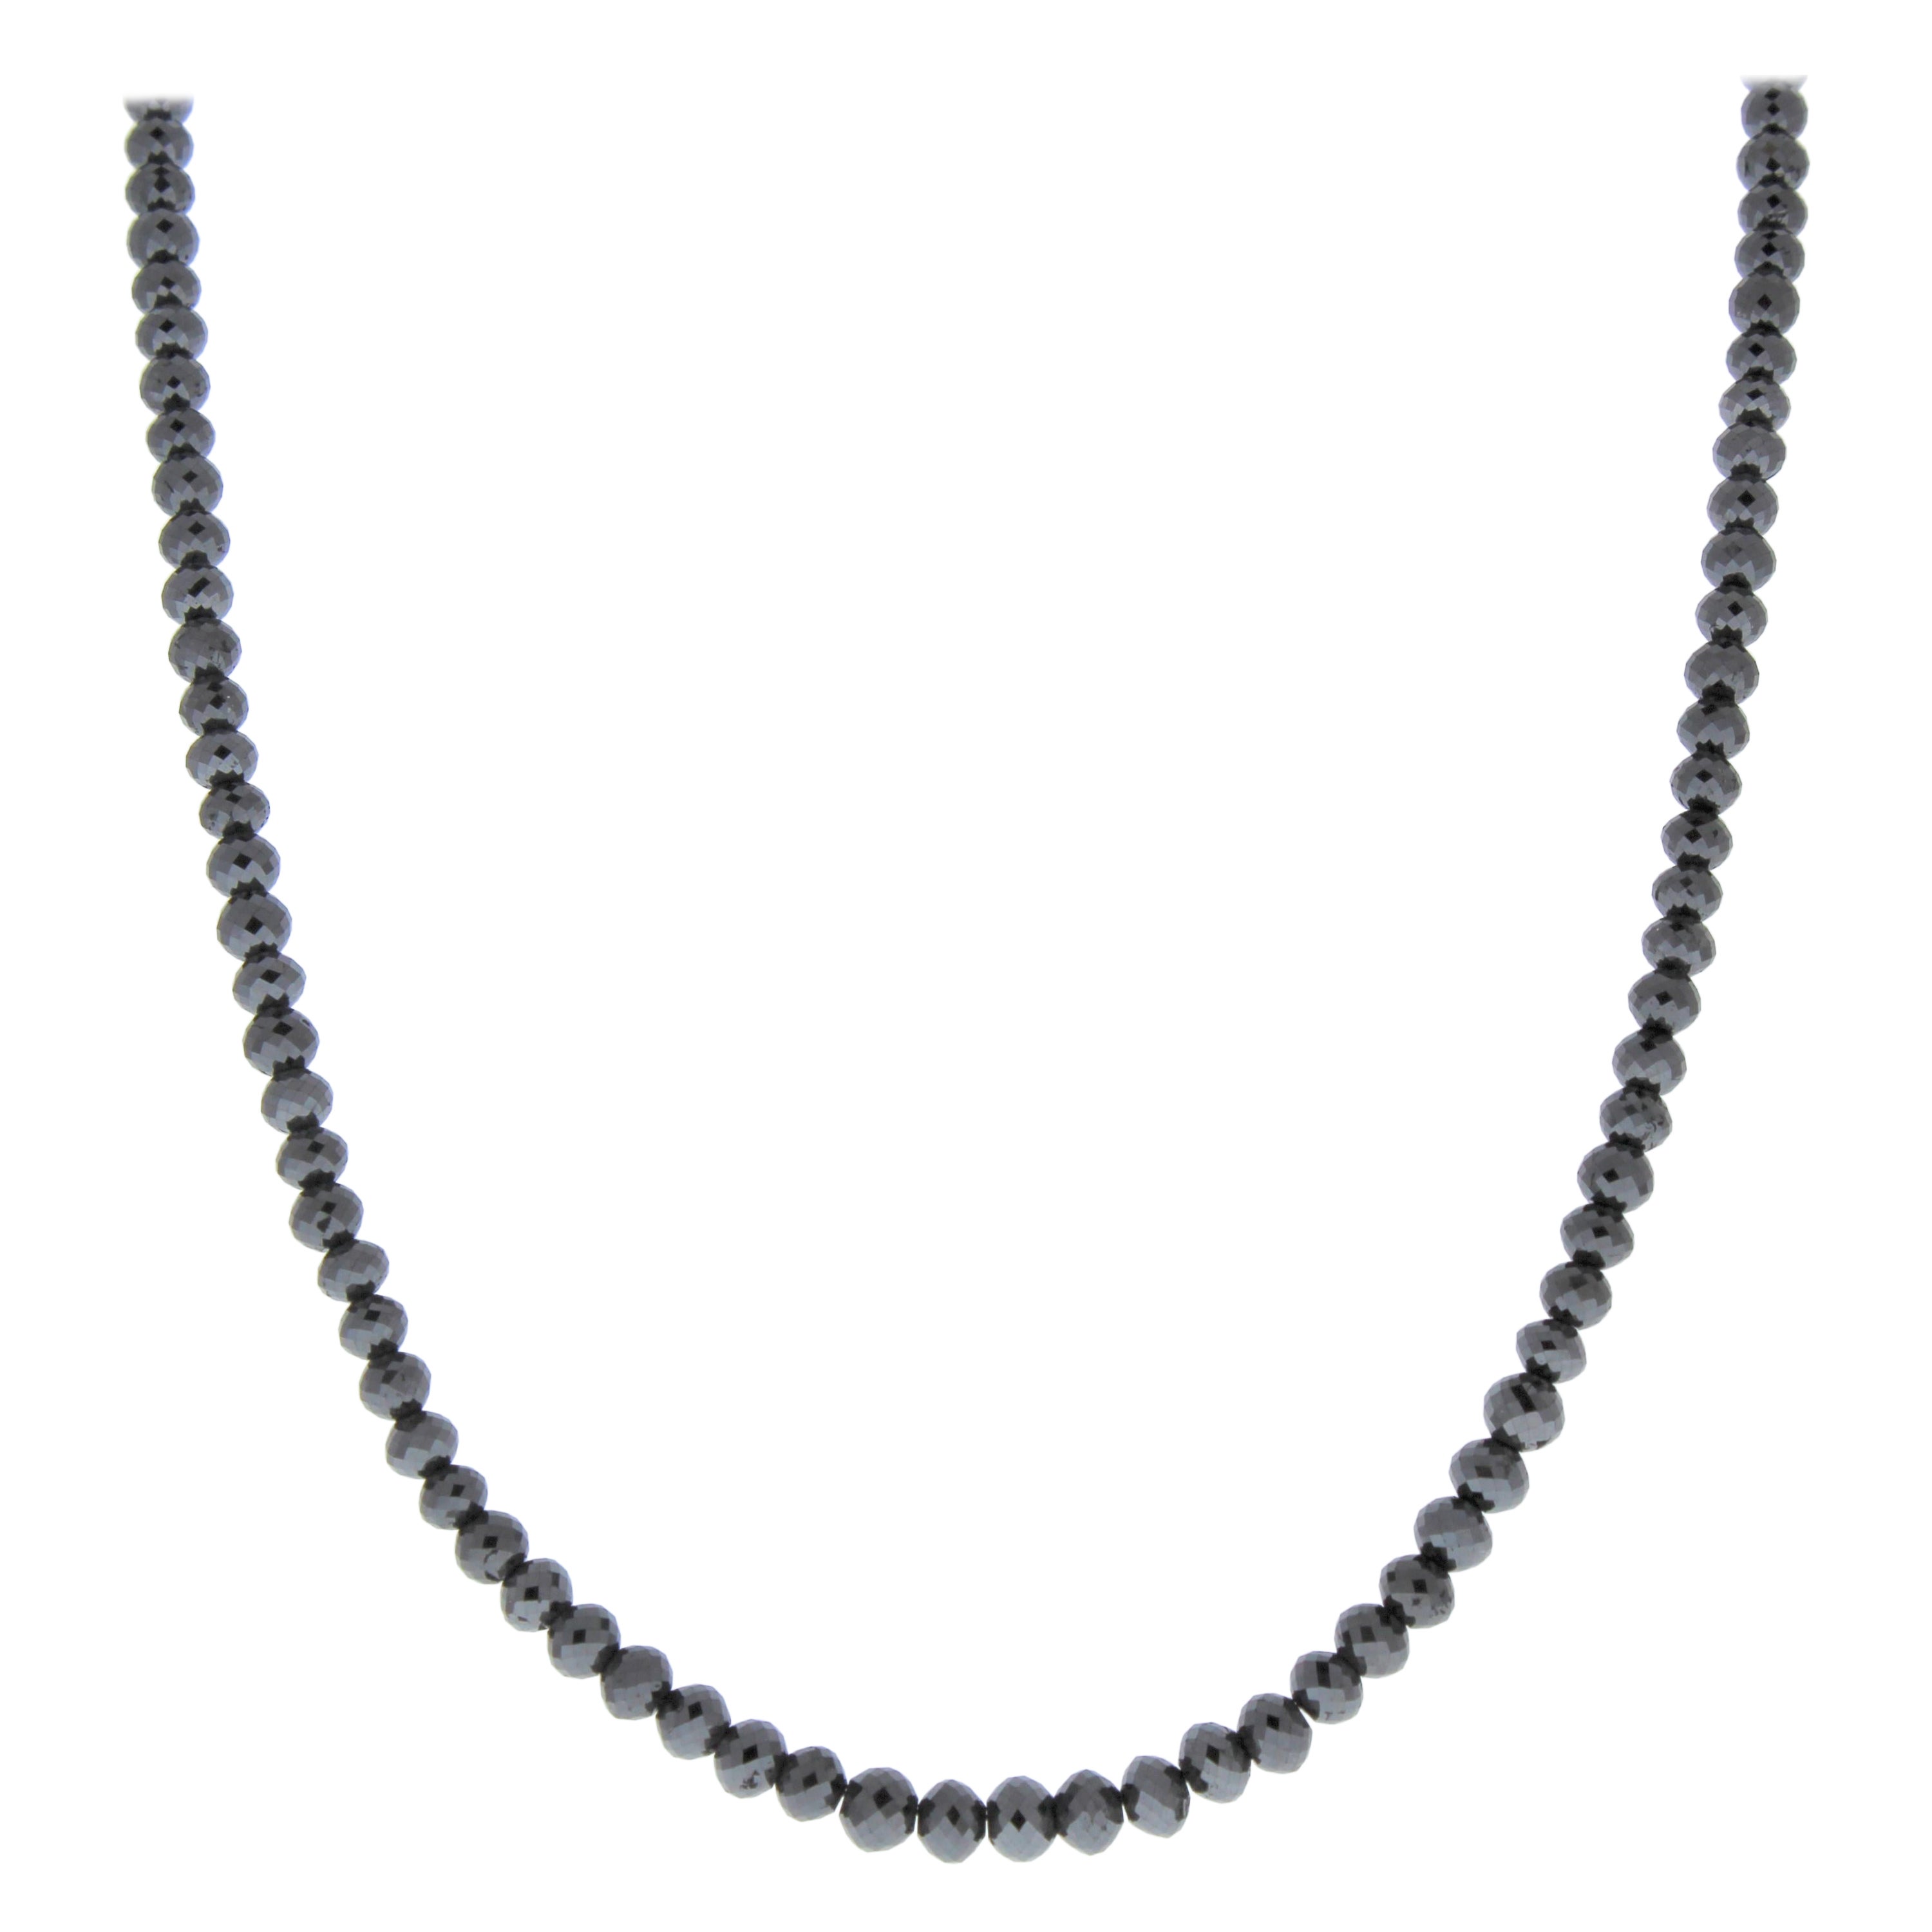 49.32CTW Black Faceted Briolette Diamond Bead Necklace